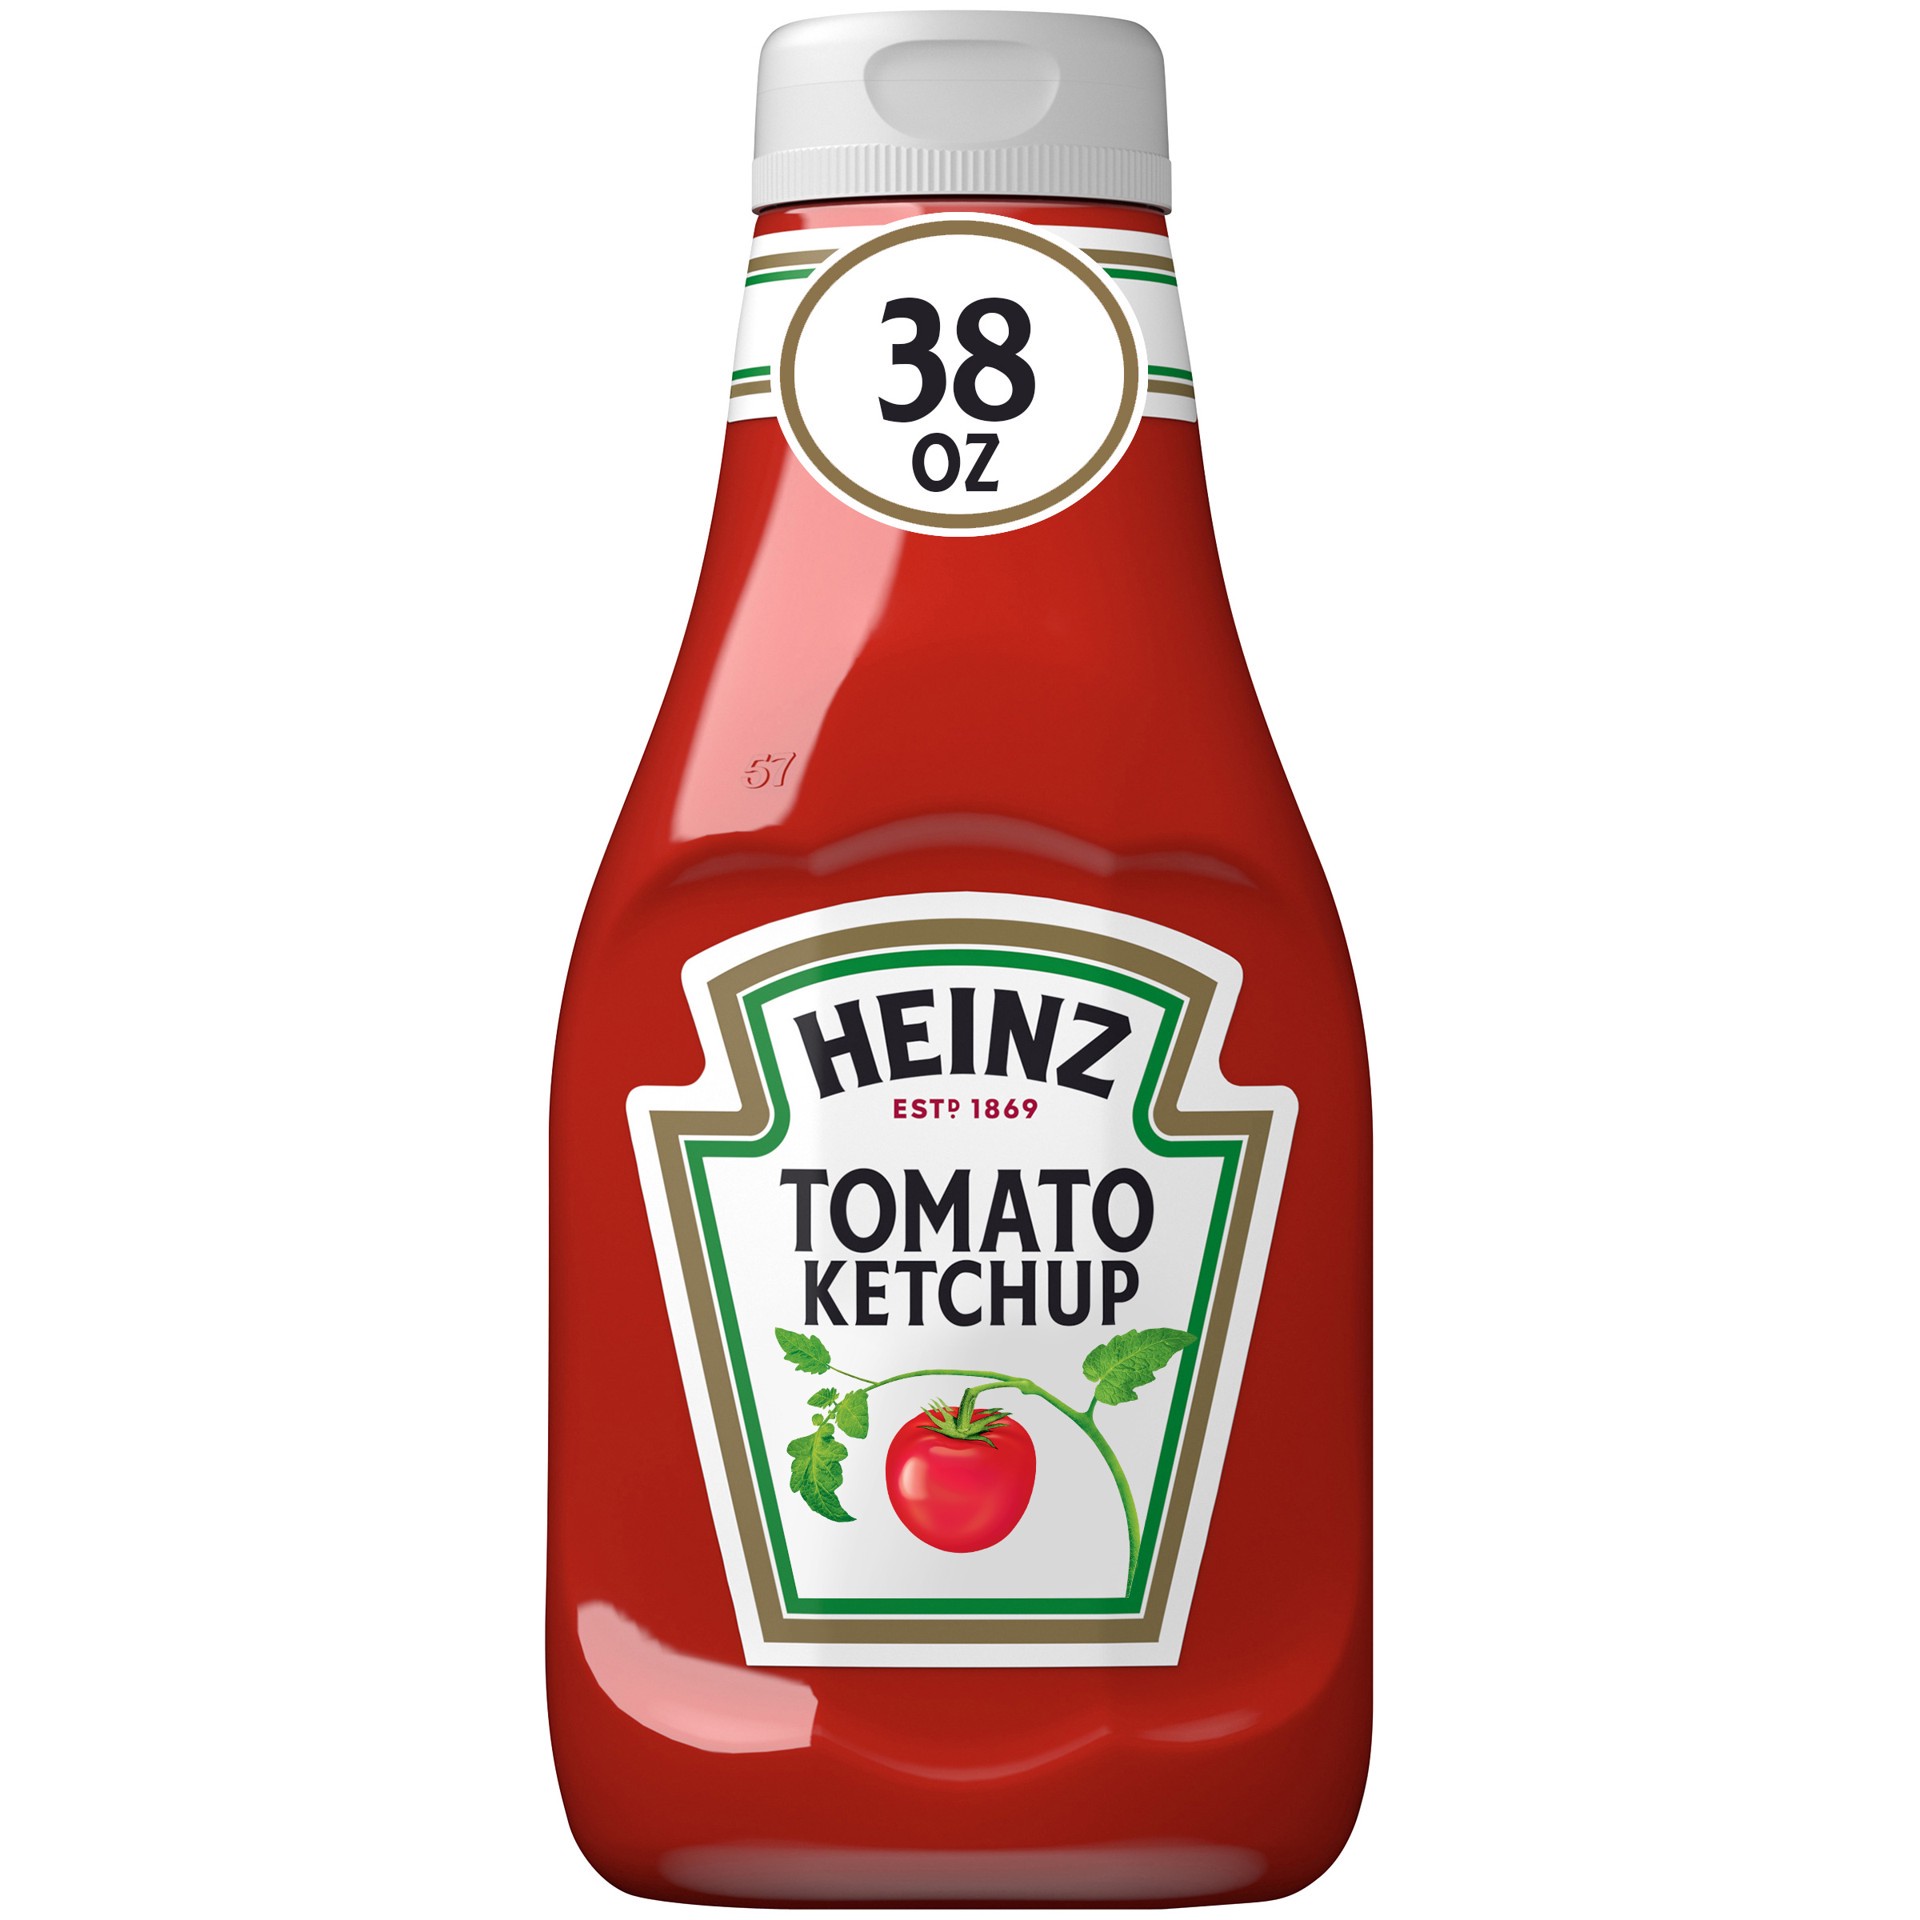 slide 1 of 8, Heinz Tomato Ketchup, 38 oz